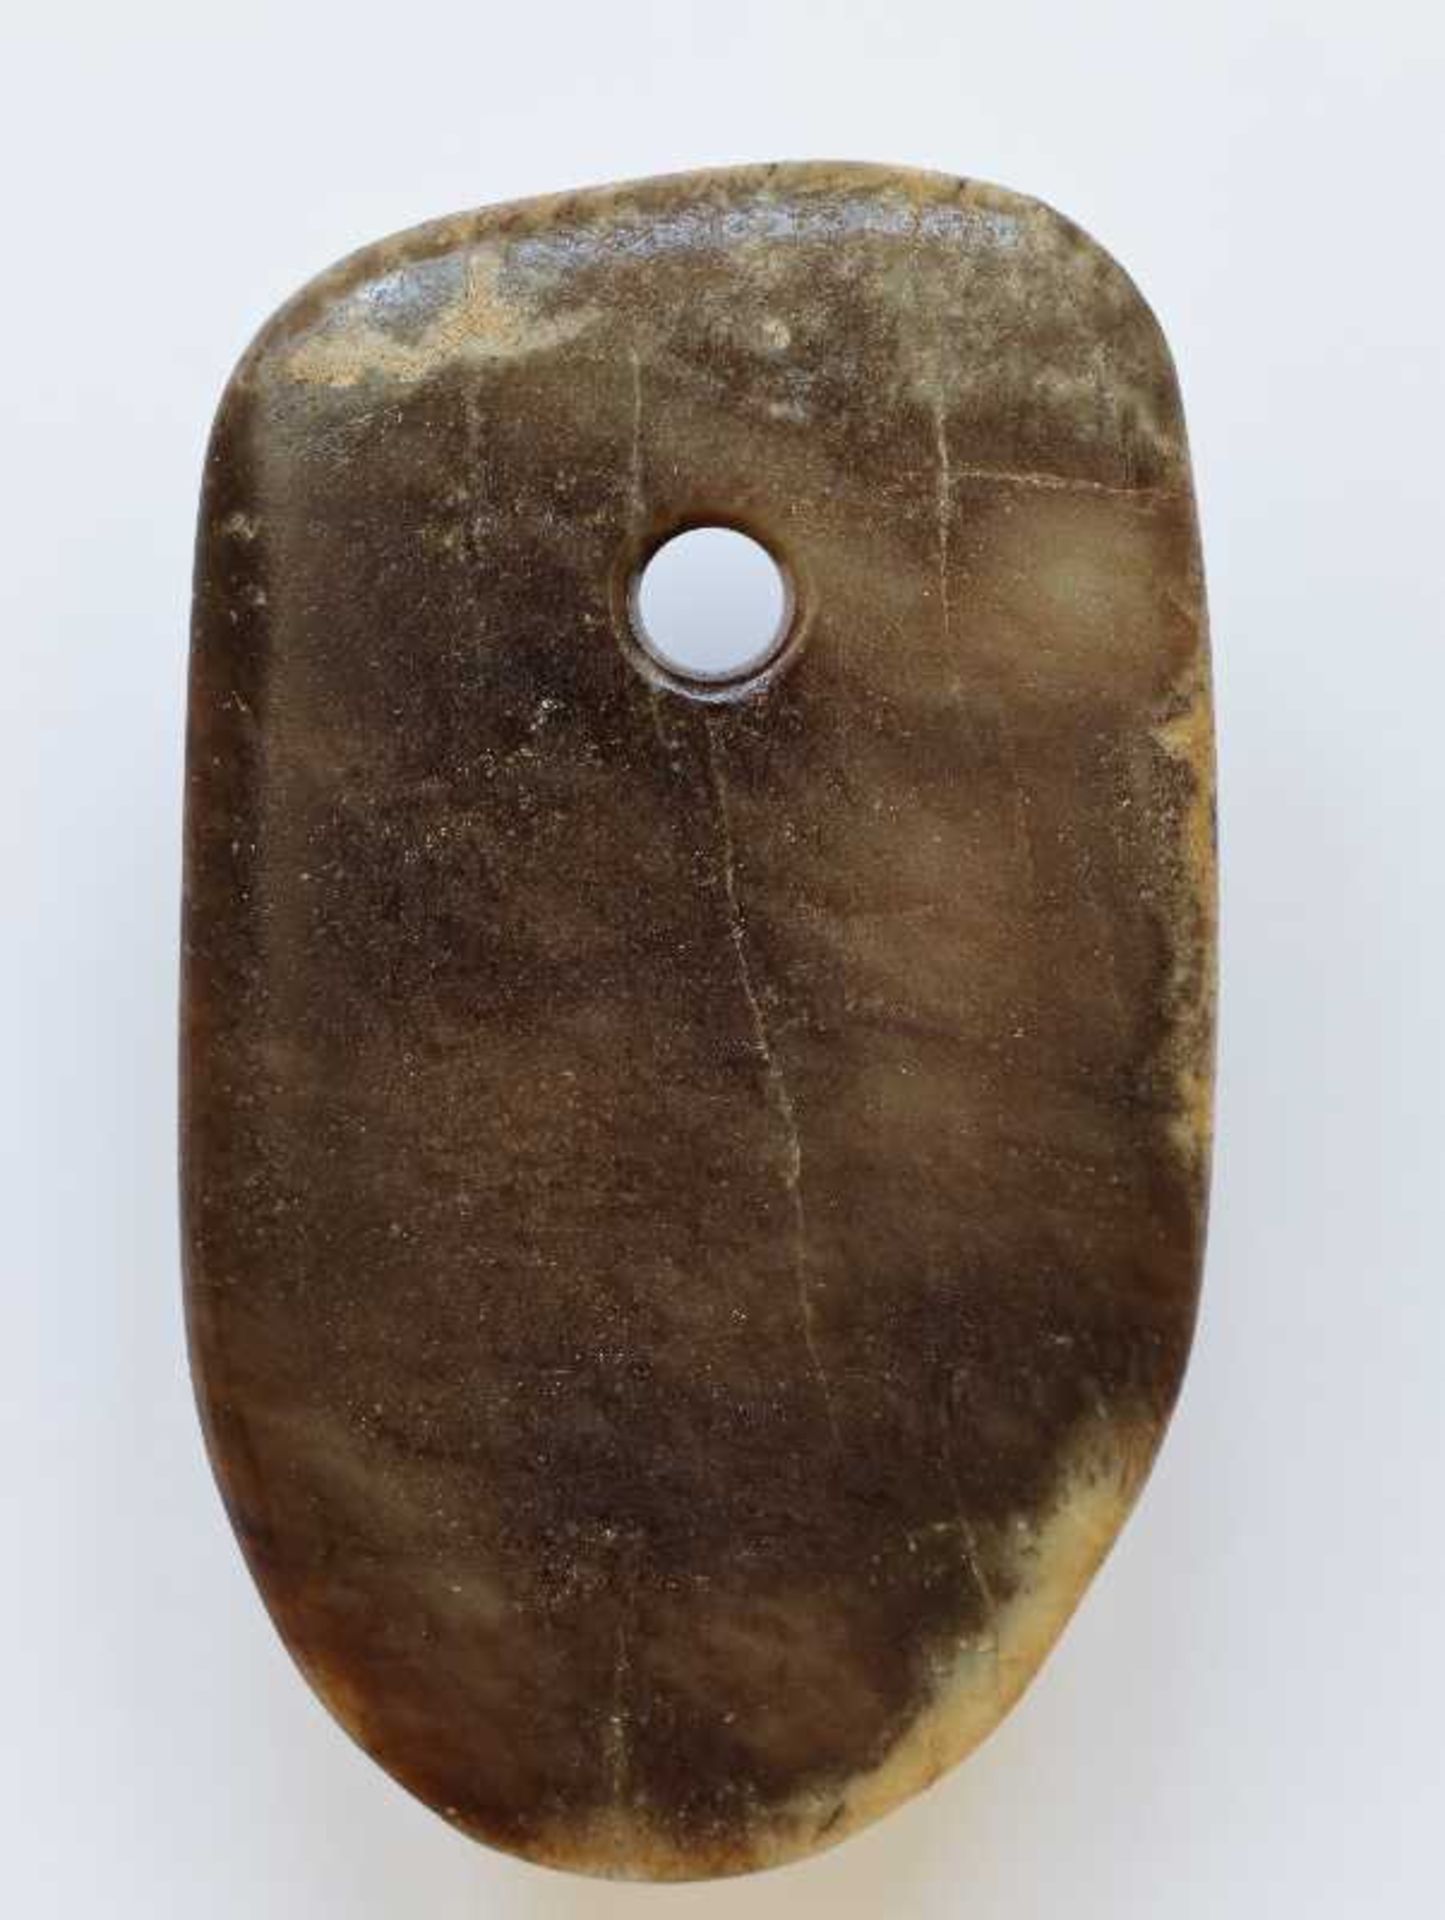 RITUELLES BEIL FU Jade. China, sp. neolithische Zeit, möglw. Qijia-Kultur, ca. 2200 bis 1900 ante